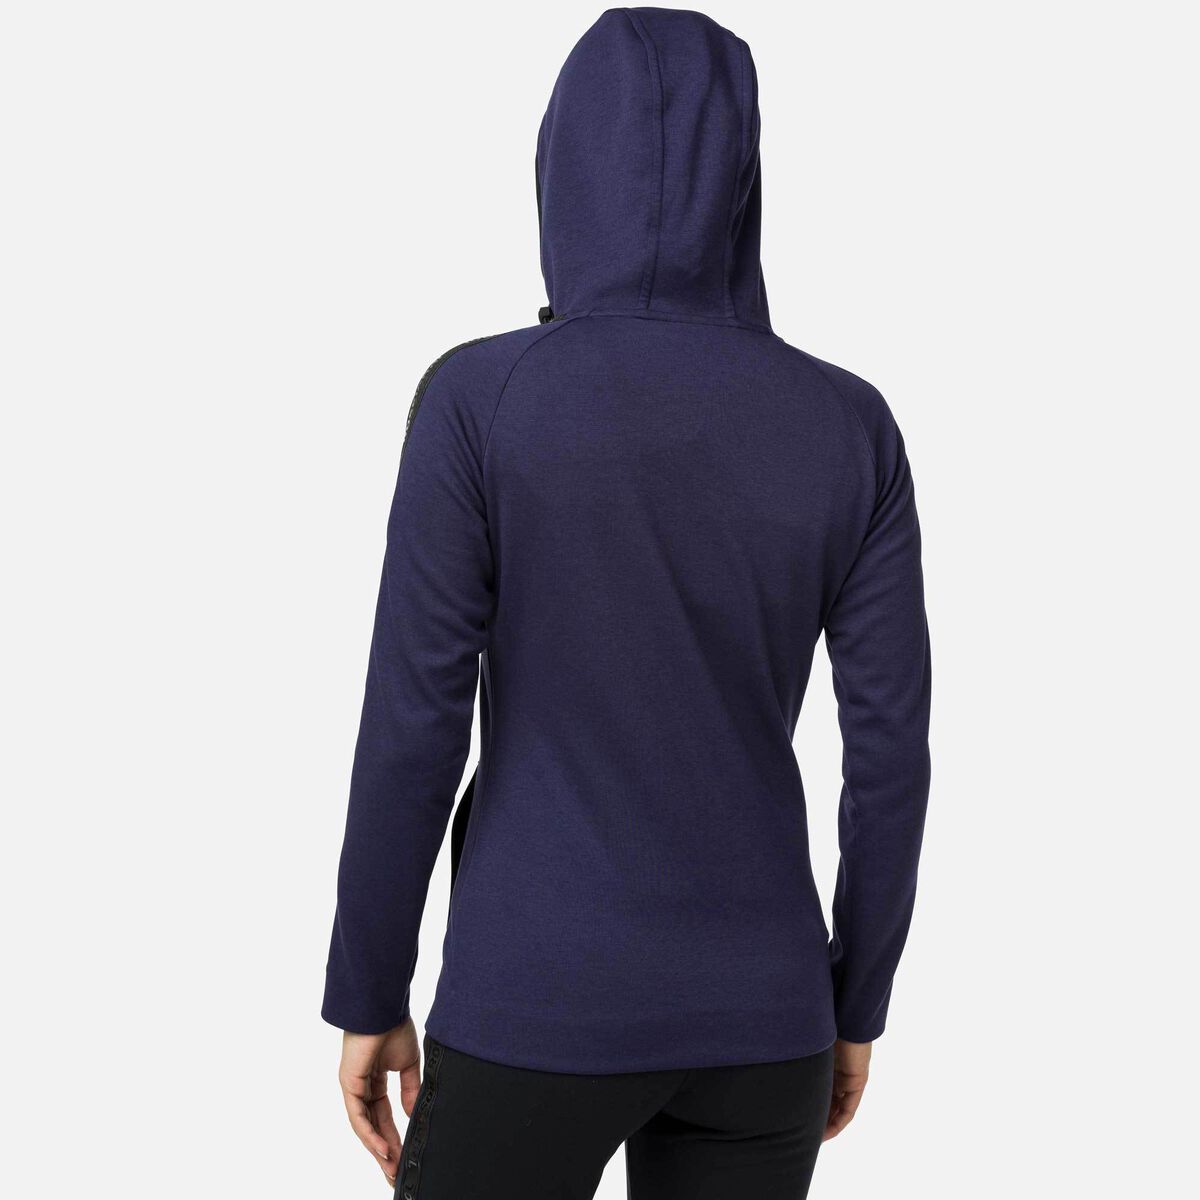 Women's Lifetech Hooded Zipped Sweatshirt